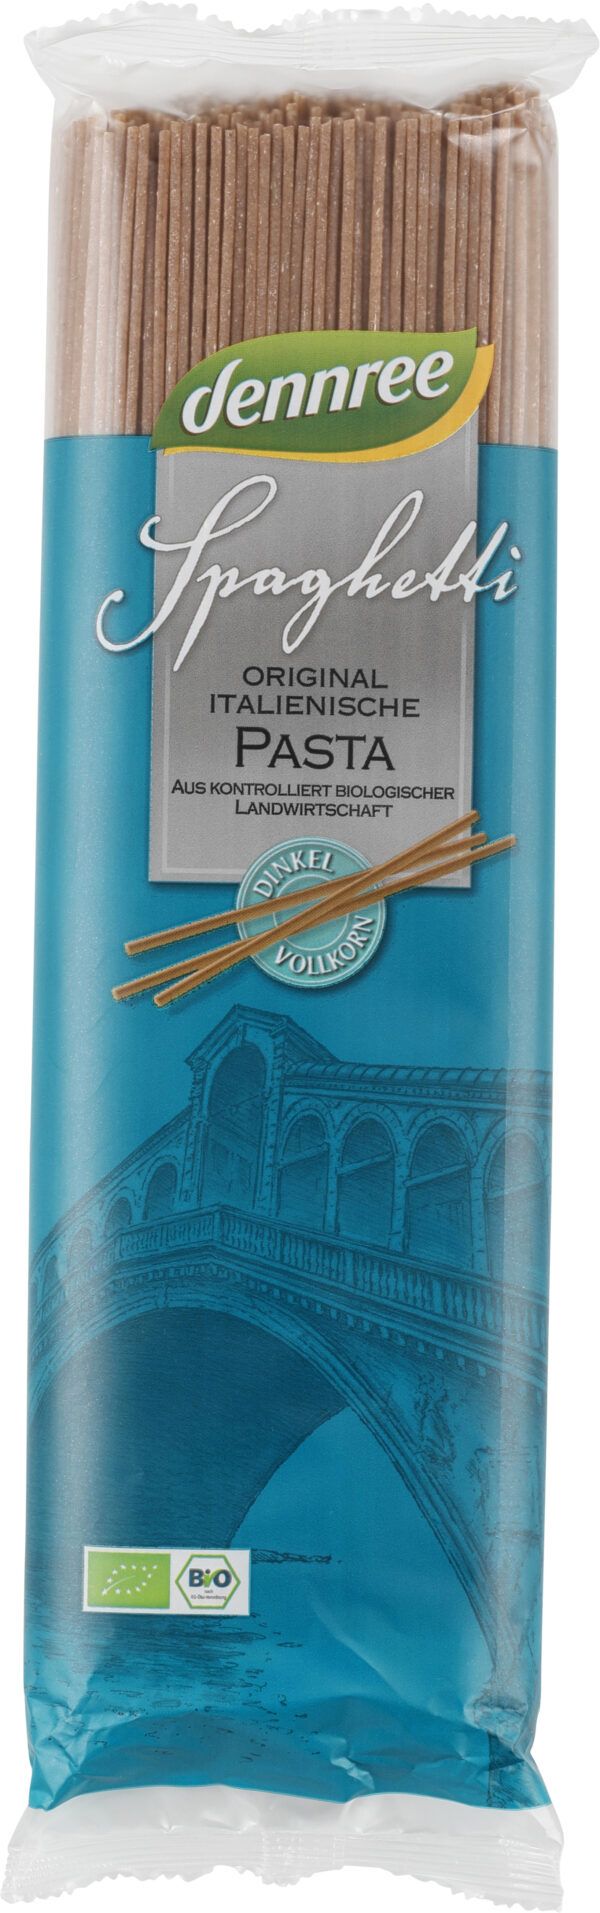 dennree Original italienische Dinkel-Vollkorn-Spaghetti 12 x 500g